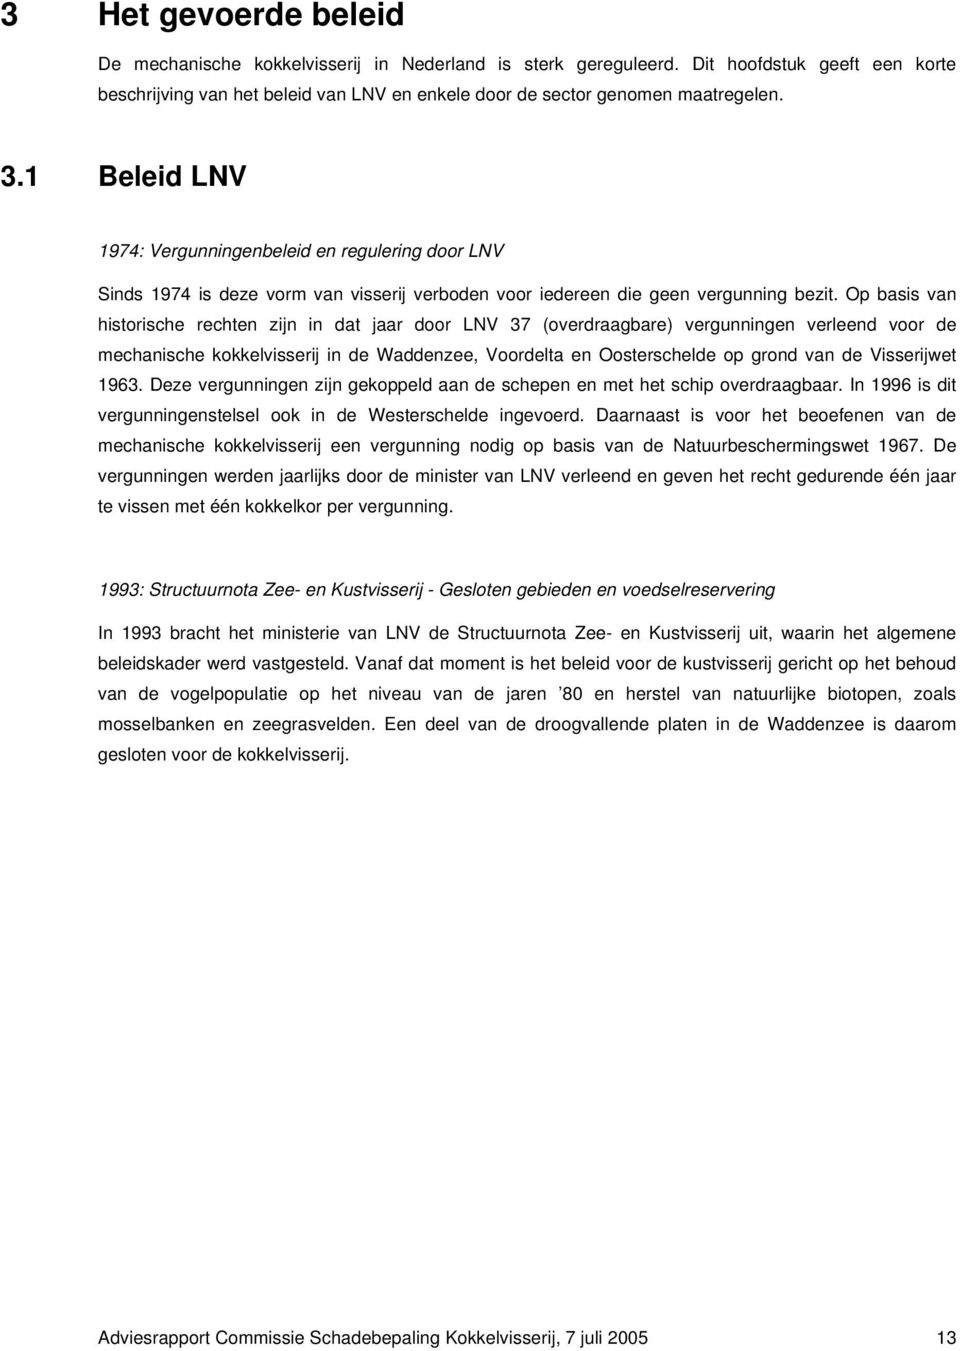 Op basis van historische rechten zijn in dat jaar door LNV 37 (overdraagbare) vergunningen verleend voor de mechanische kokkelvisserij in de Waddenzee, Voordelta en Oosterschelde op grond van de